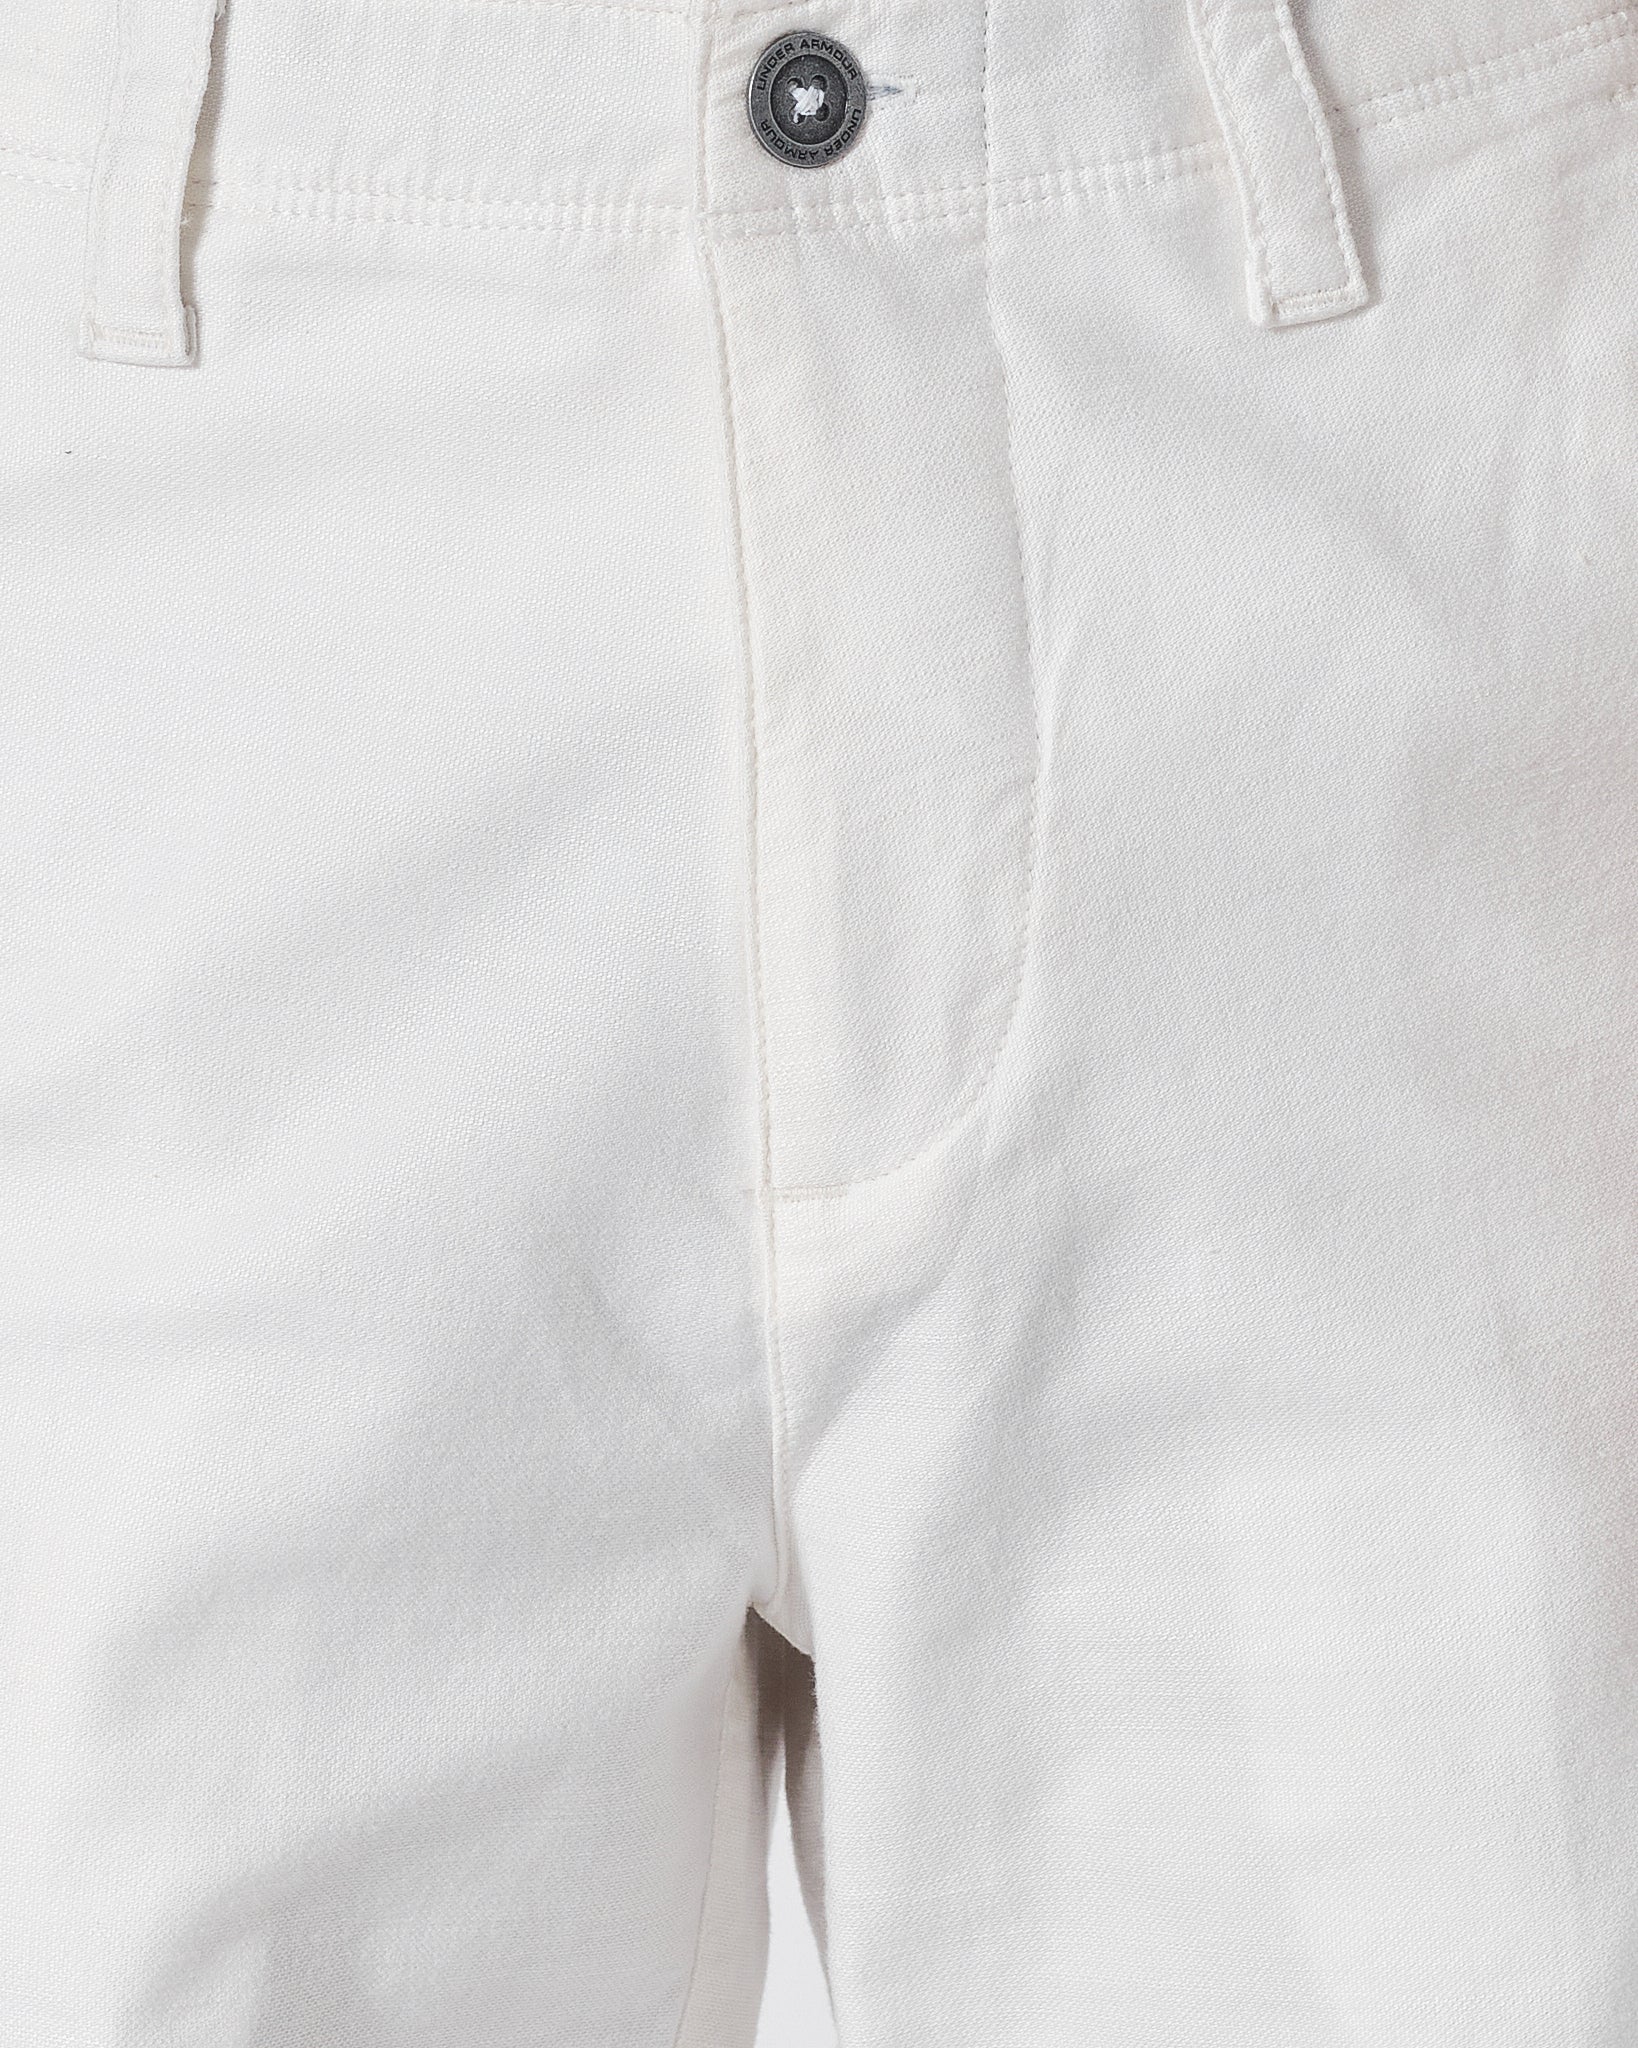 UA Men White Short Pants 18.50